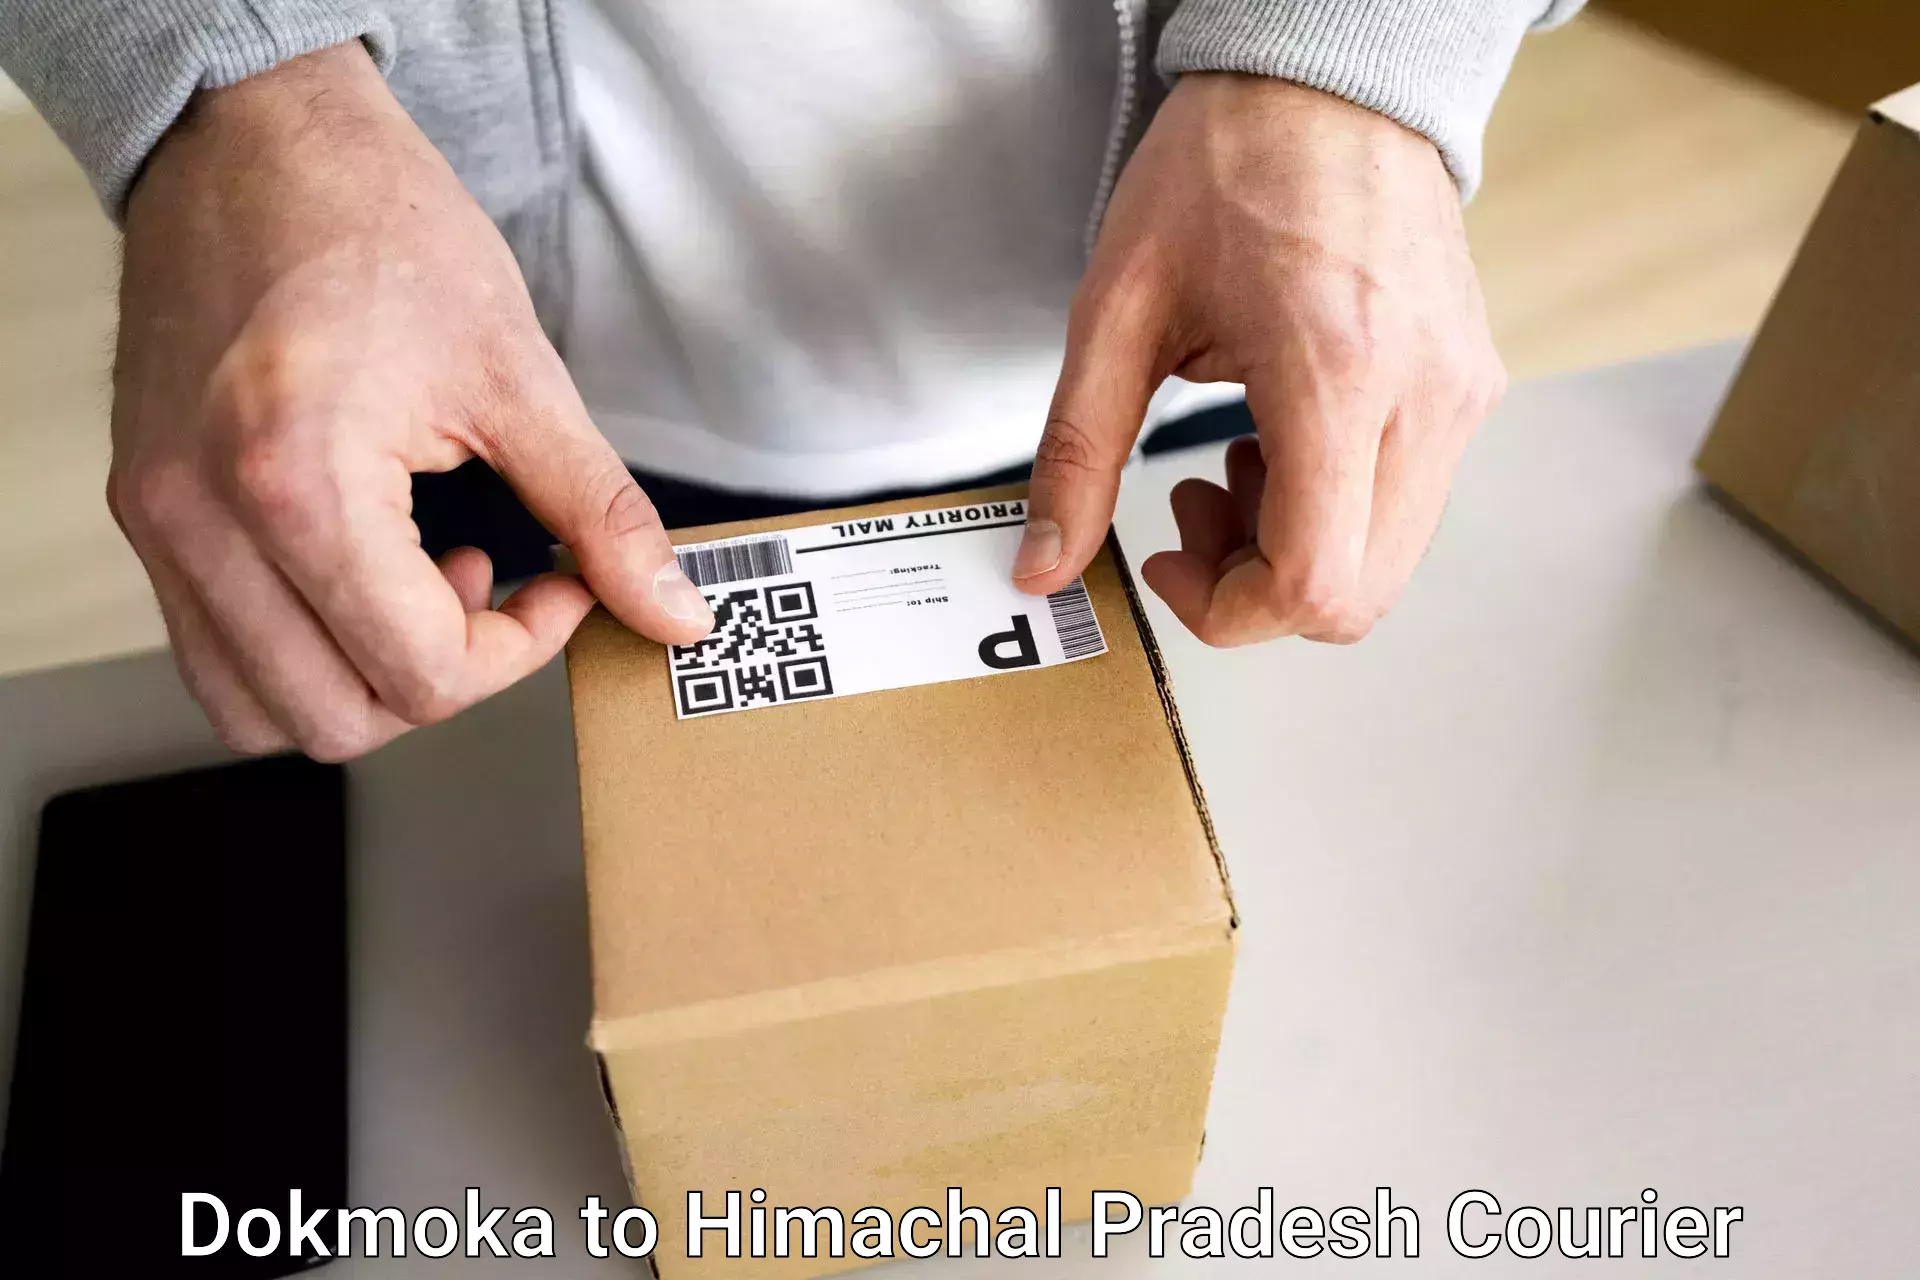 Luggage delivery system Dokmoka to Jukhala